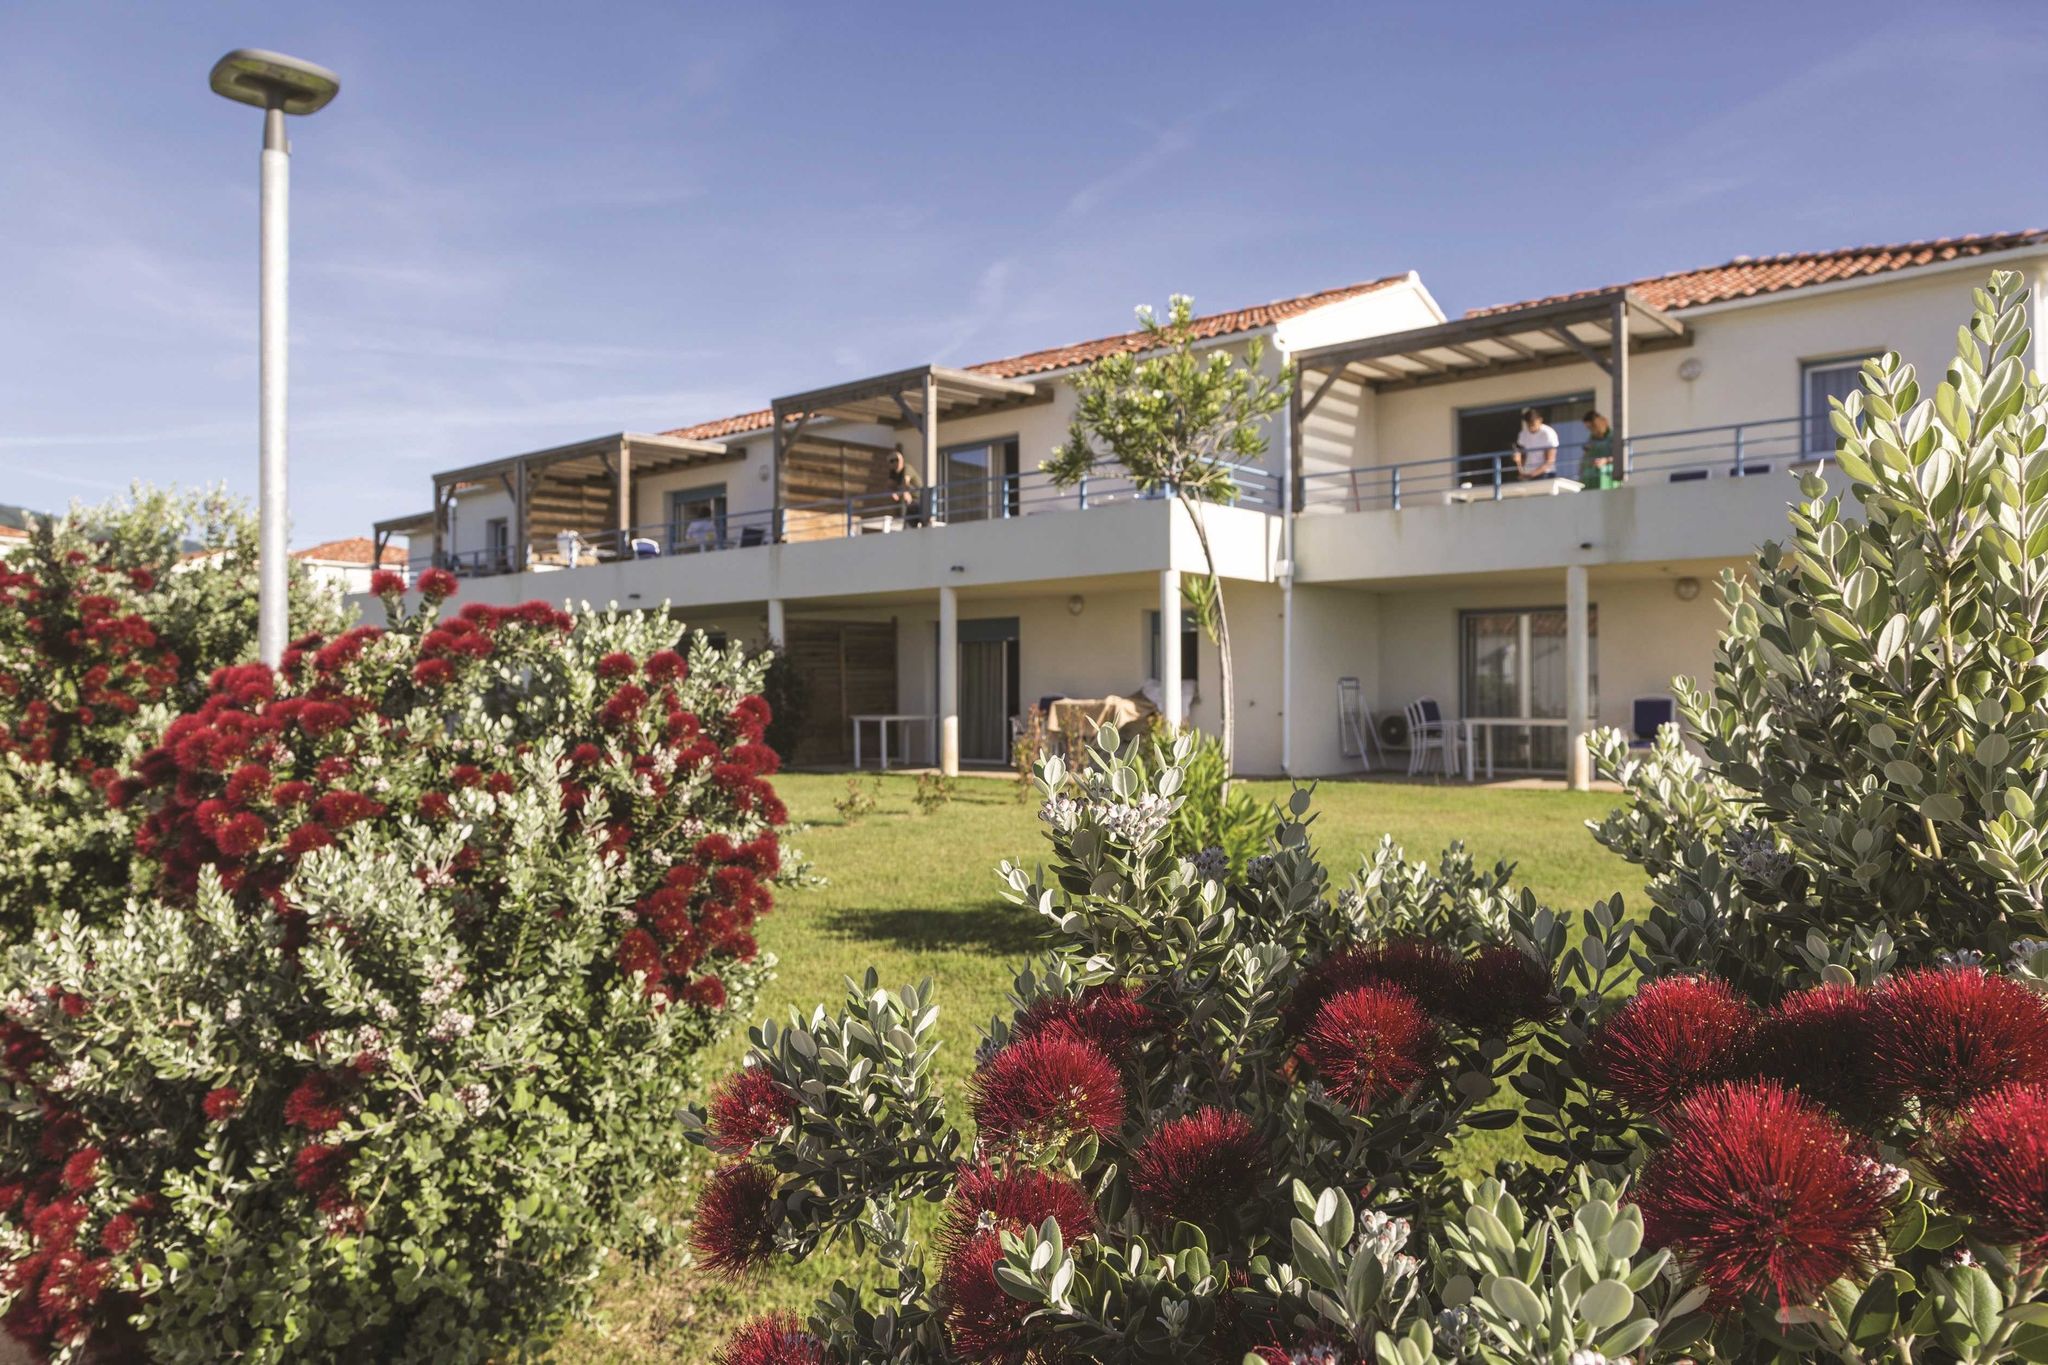 Gezellig geschakeld medditeraans vakantiehuis op Corsica